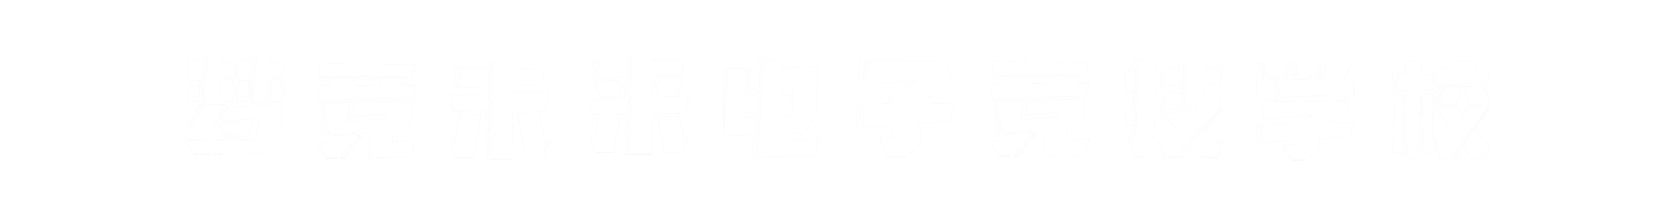 梦竞未来南通banner字